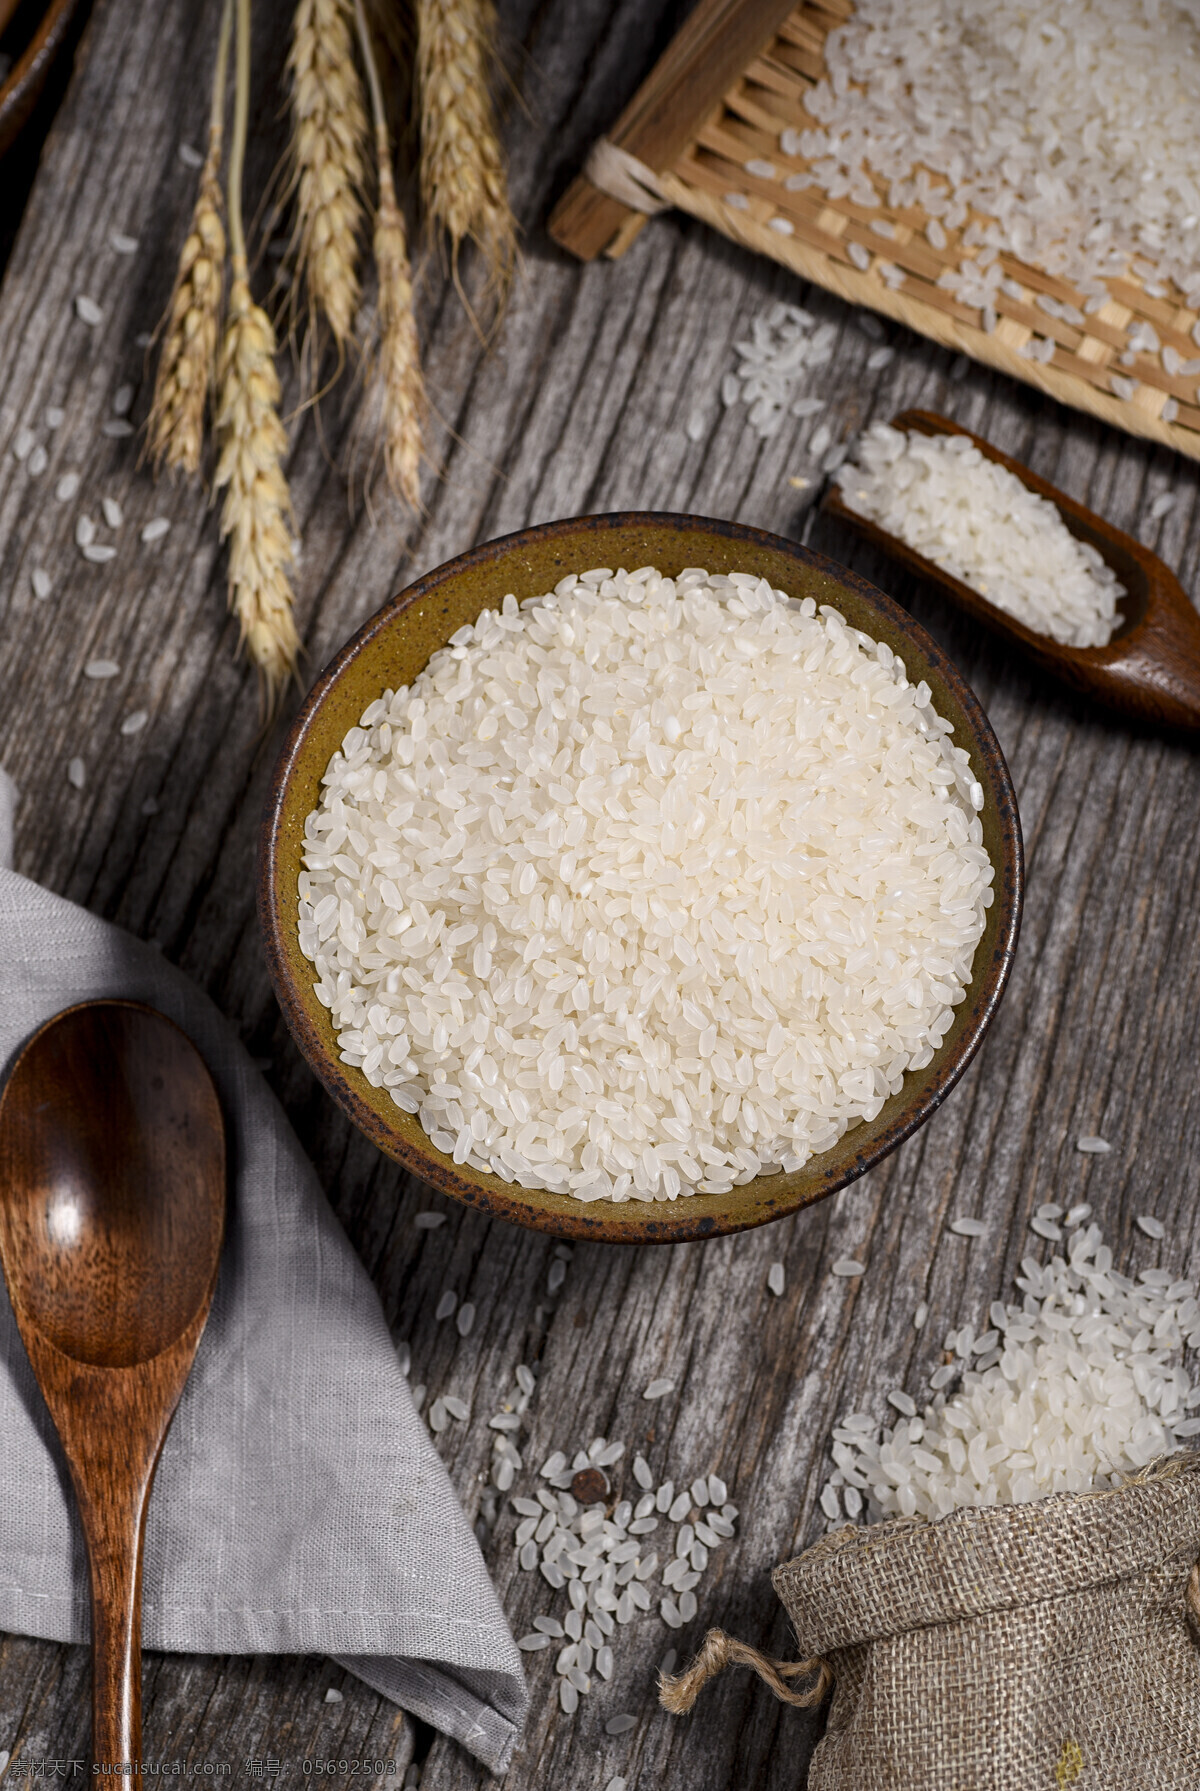 大米图片 洁白 大米 粮食 米粒 五谷 餐饮美食 食物原料